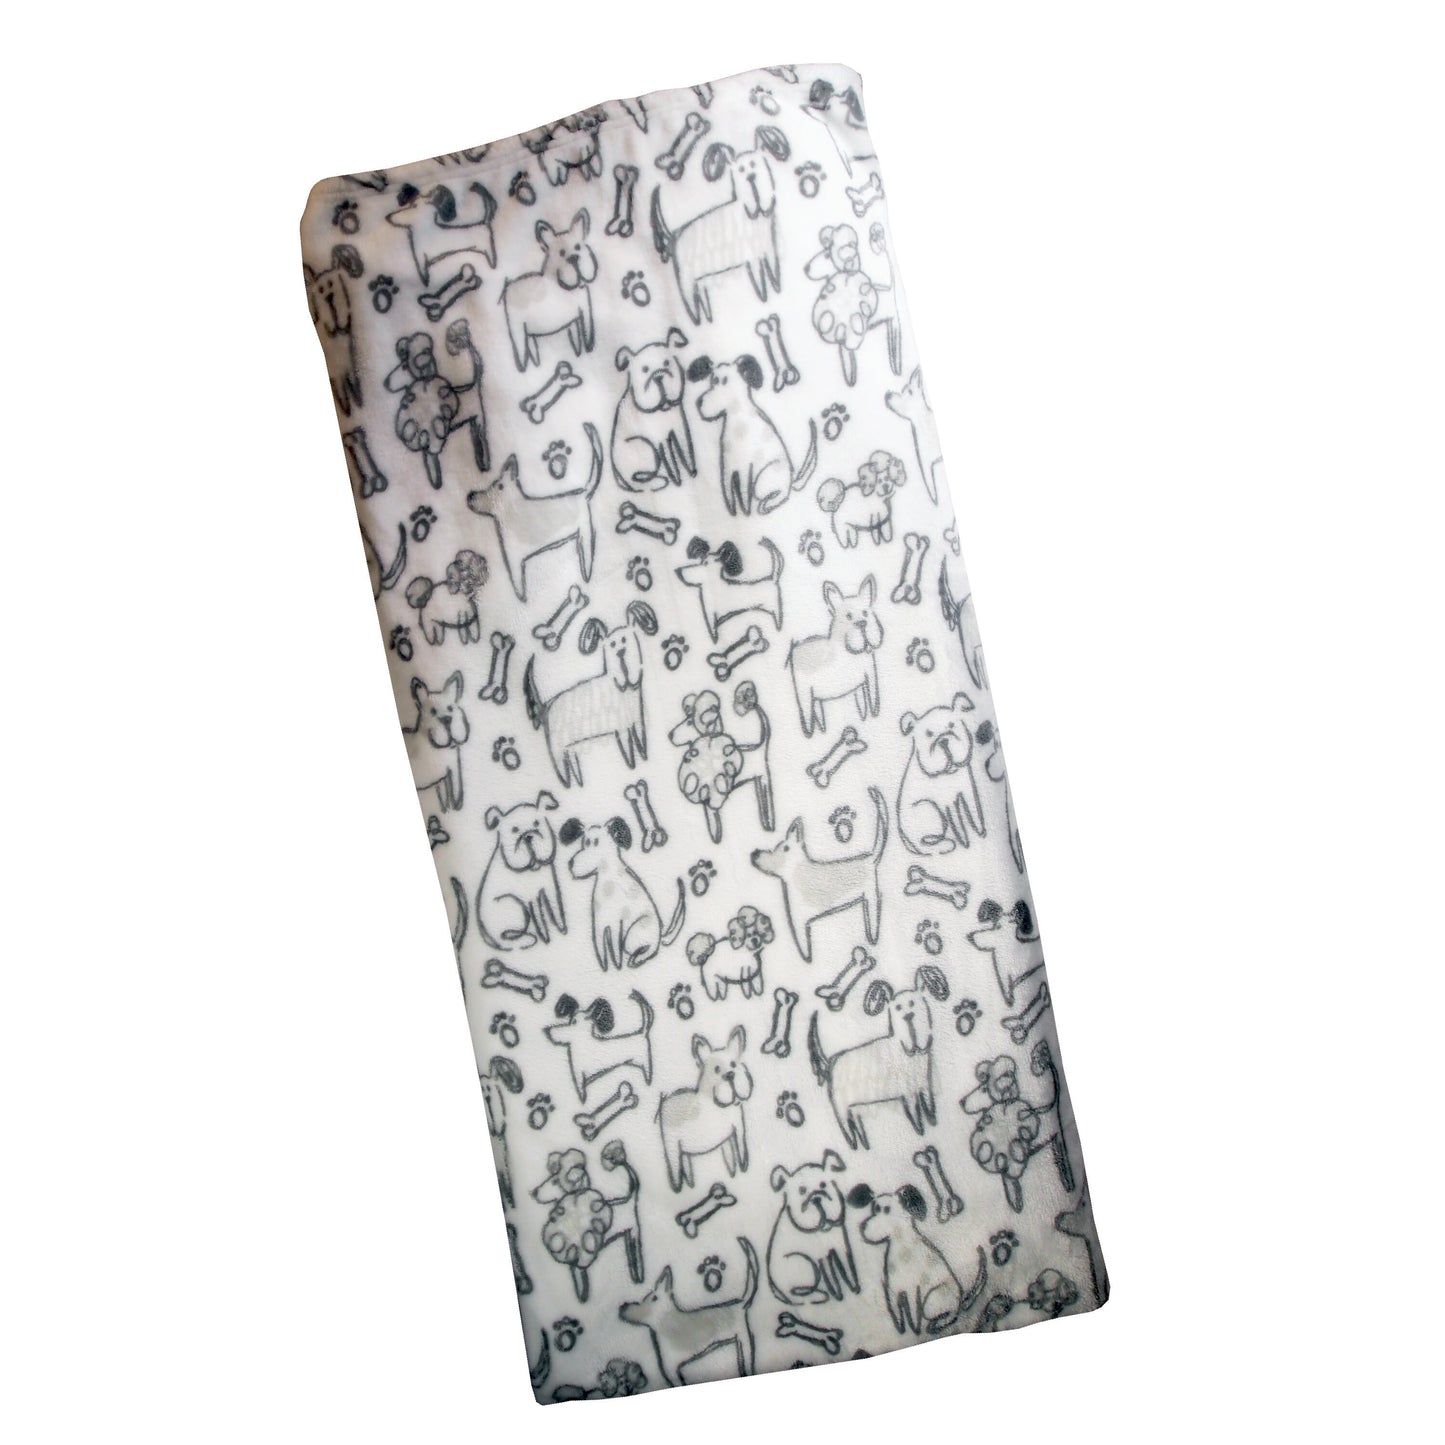 Blanket :  Dog Sketches - 50" x 70" - plush throw